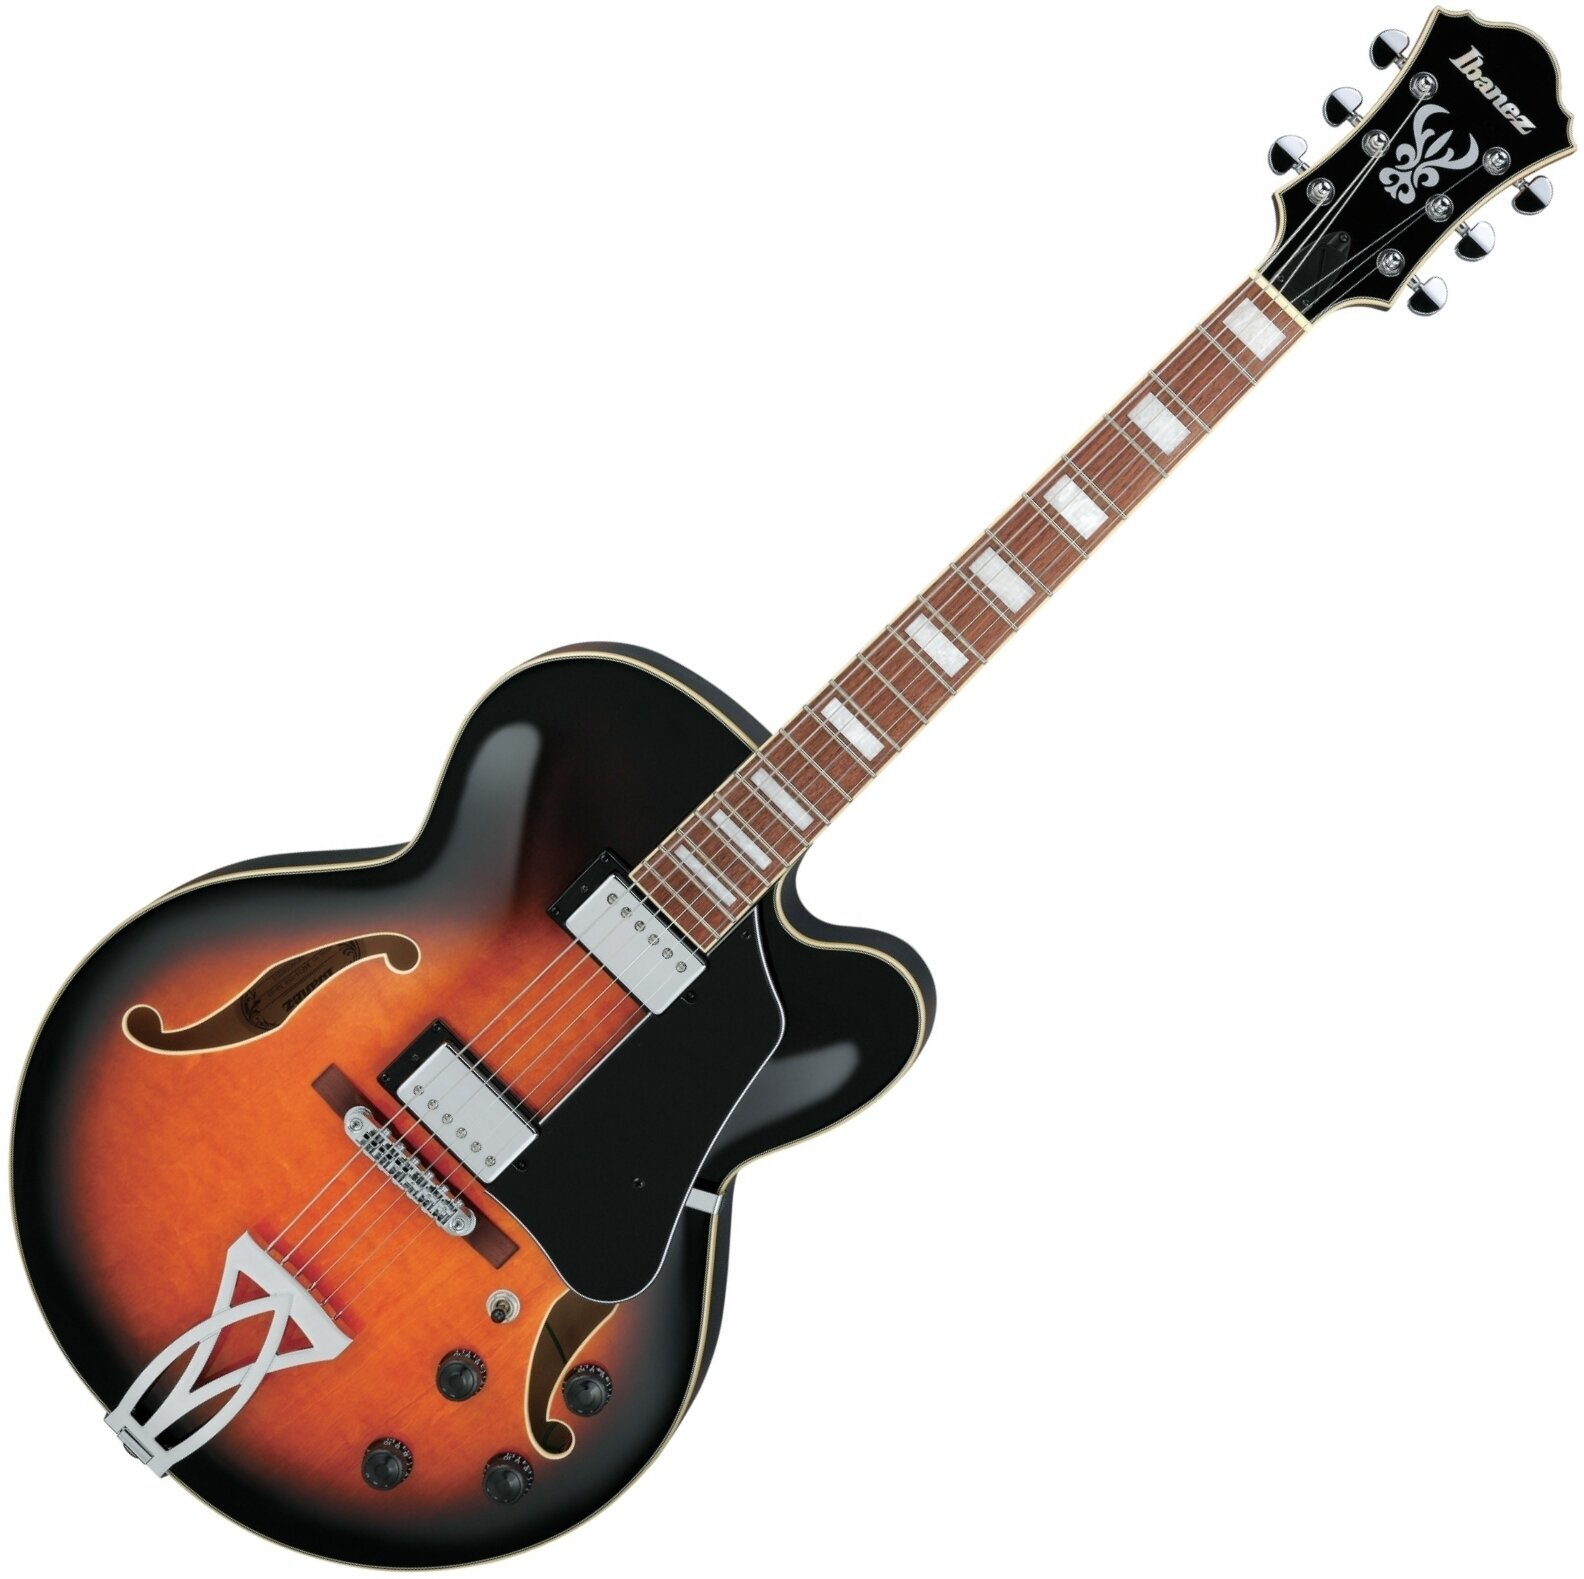 Semiakustická kytara Ibanez AF75-VSB Vintage Sunburst